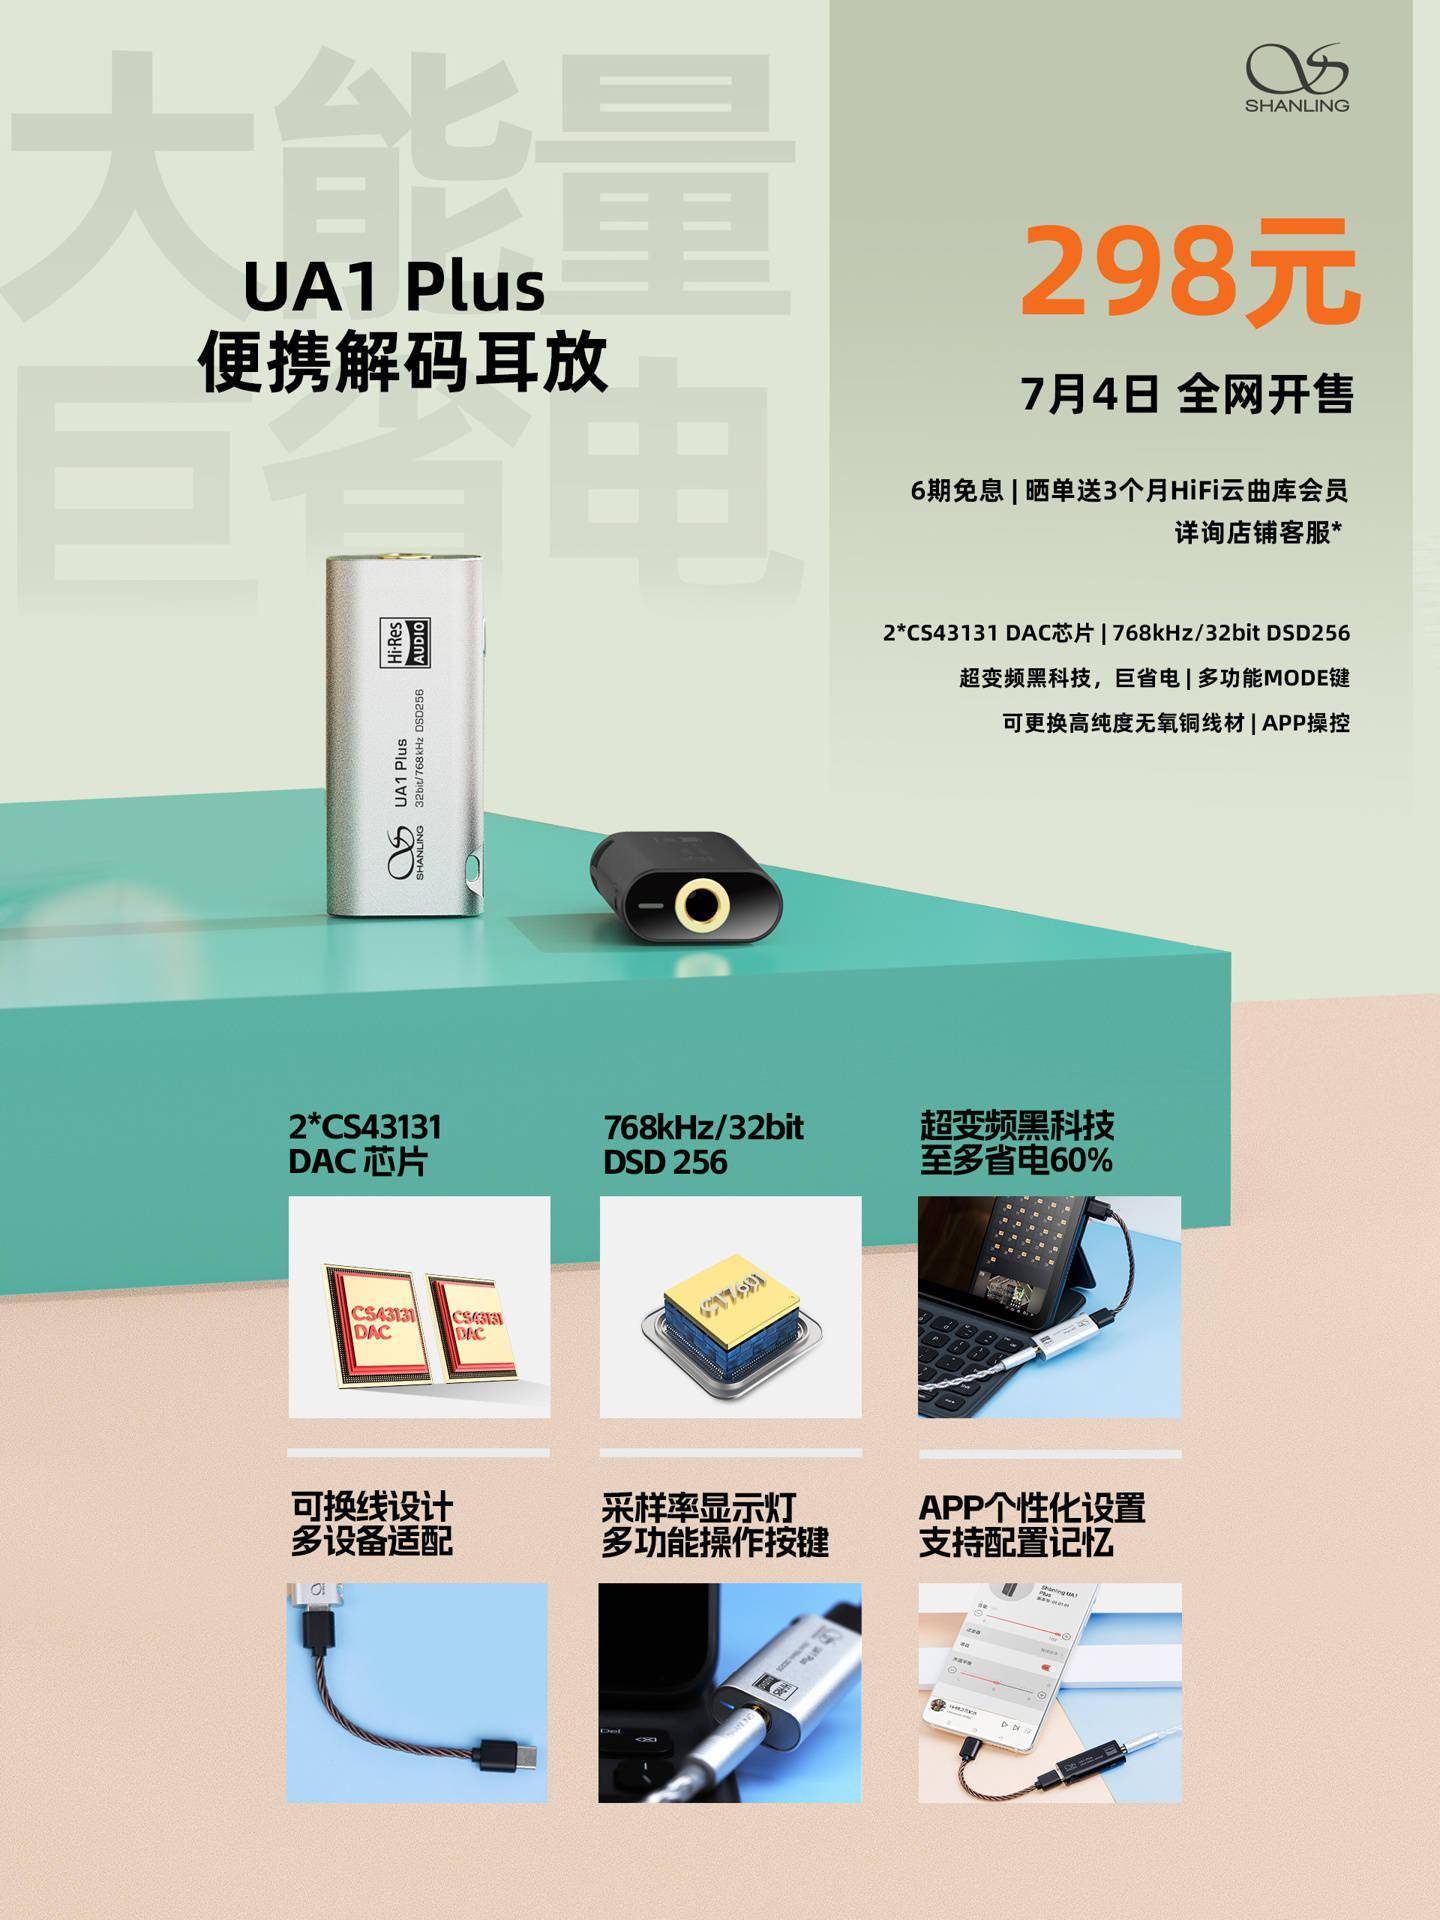 山灵音响UA1 Plus便携解码耳放现已开售  搭载了山灵自研超变频技术